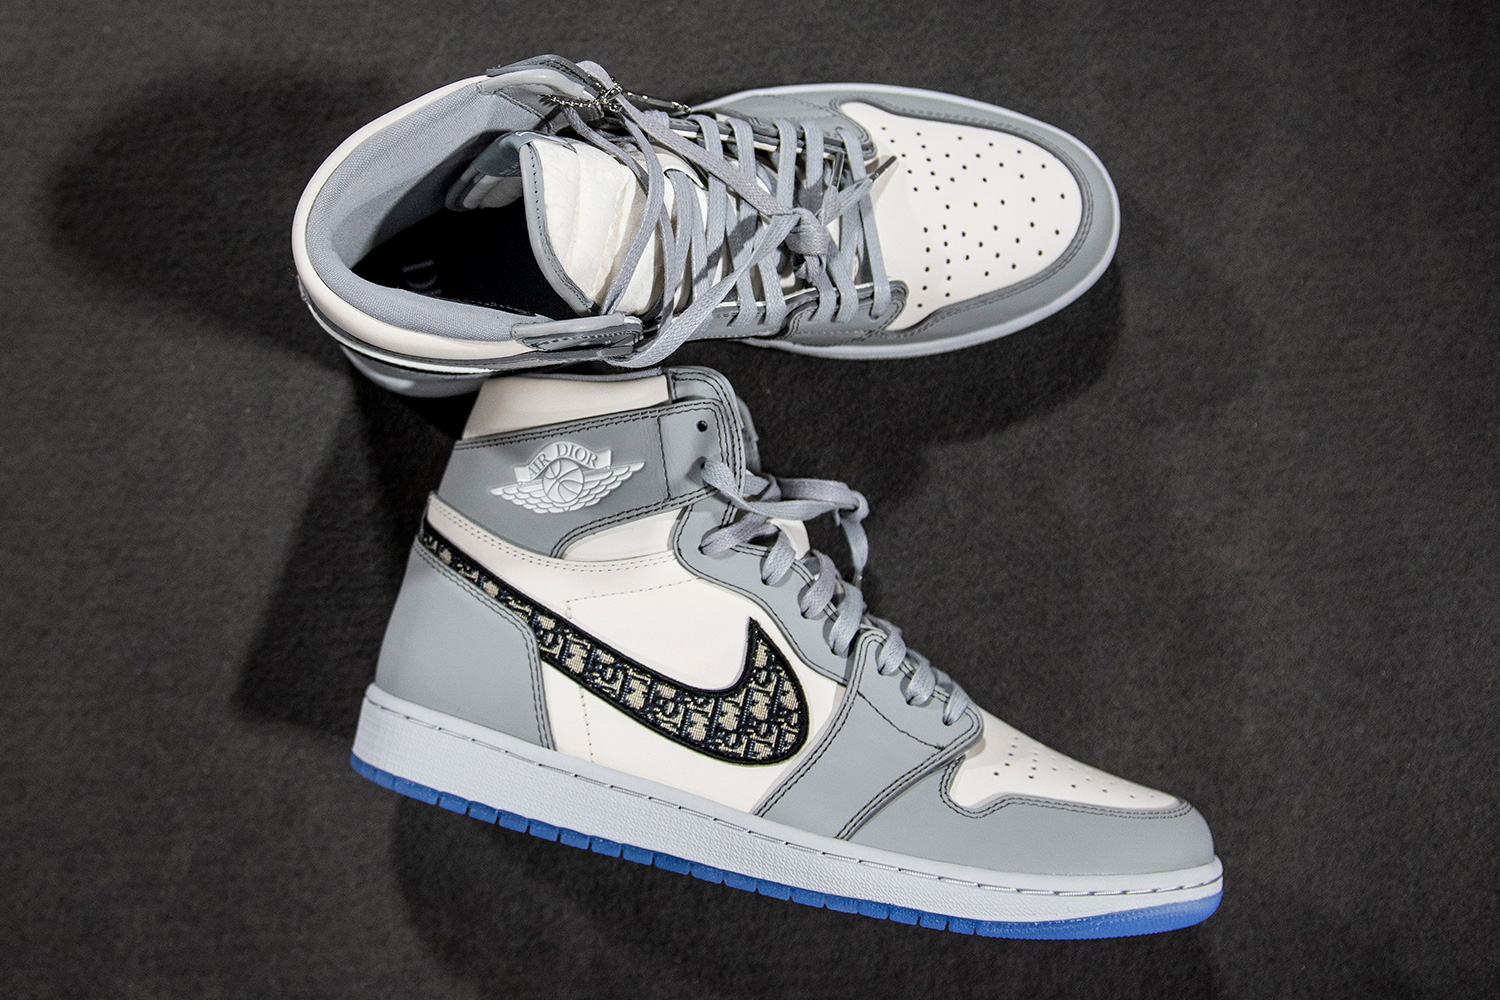 Nike x Dior Air Jordan 1 Grey High Sneakers 